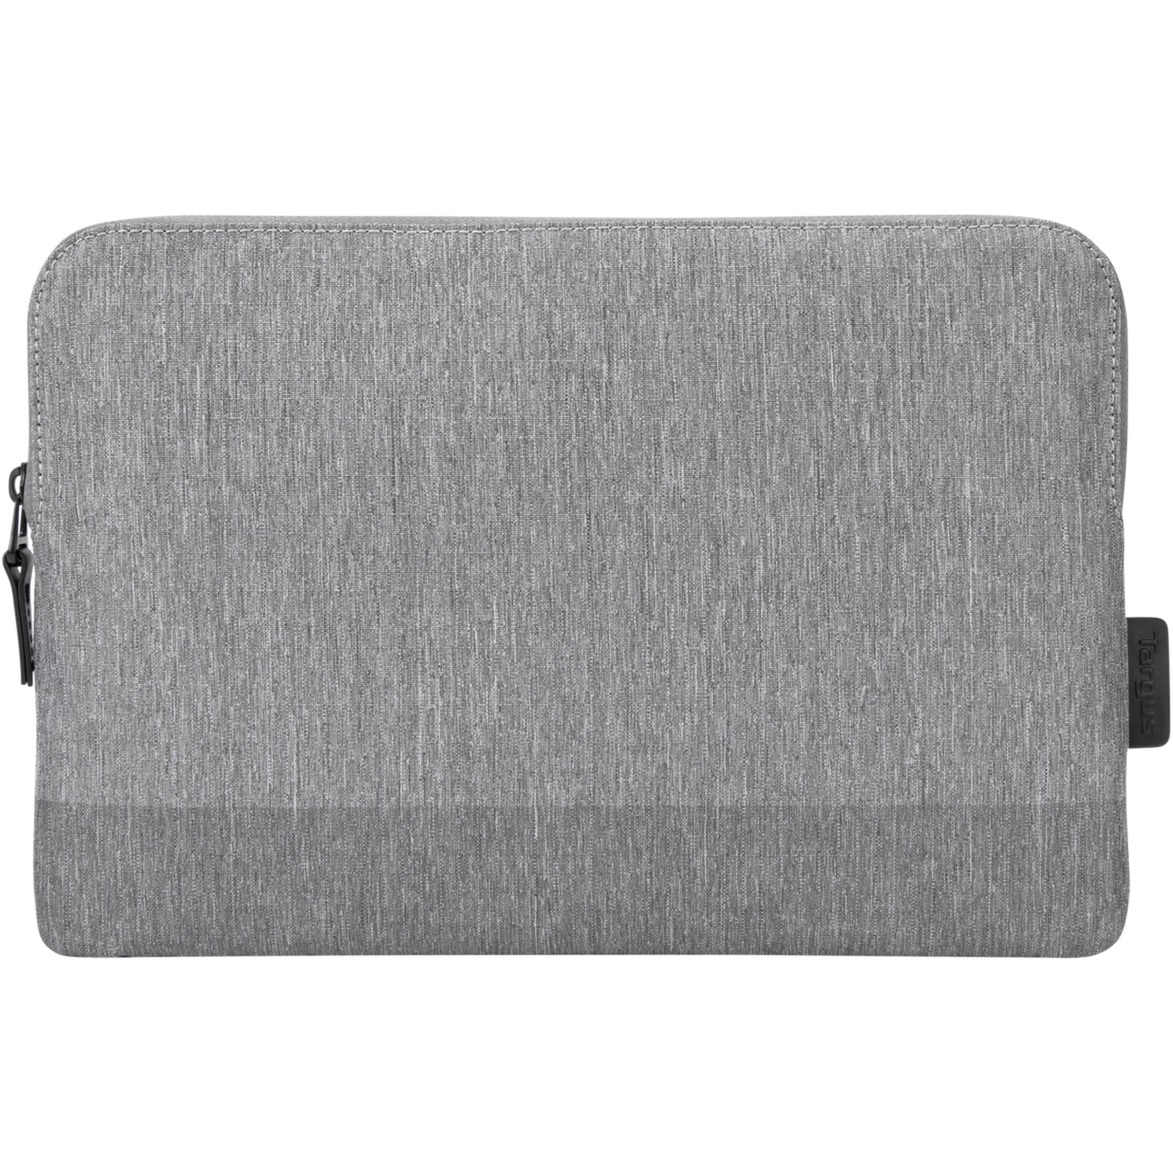 Image of Alternate - CityLite MacBookPro Sleeve, Notebooktasche online einkaufen bei Alternate